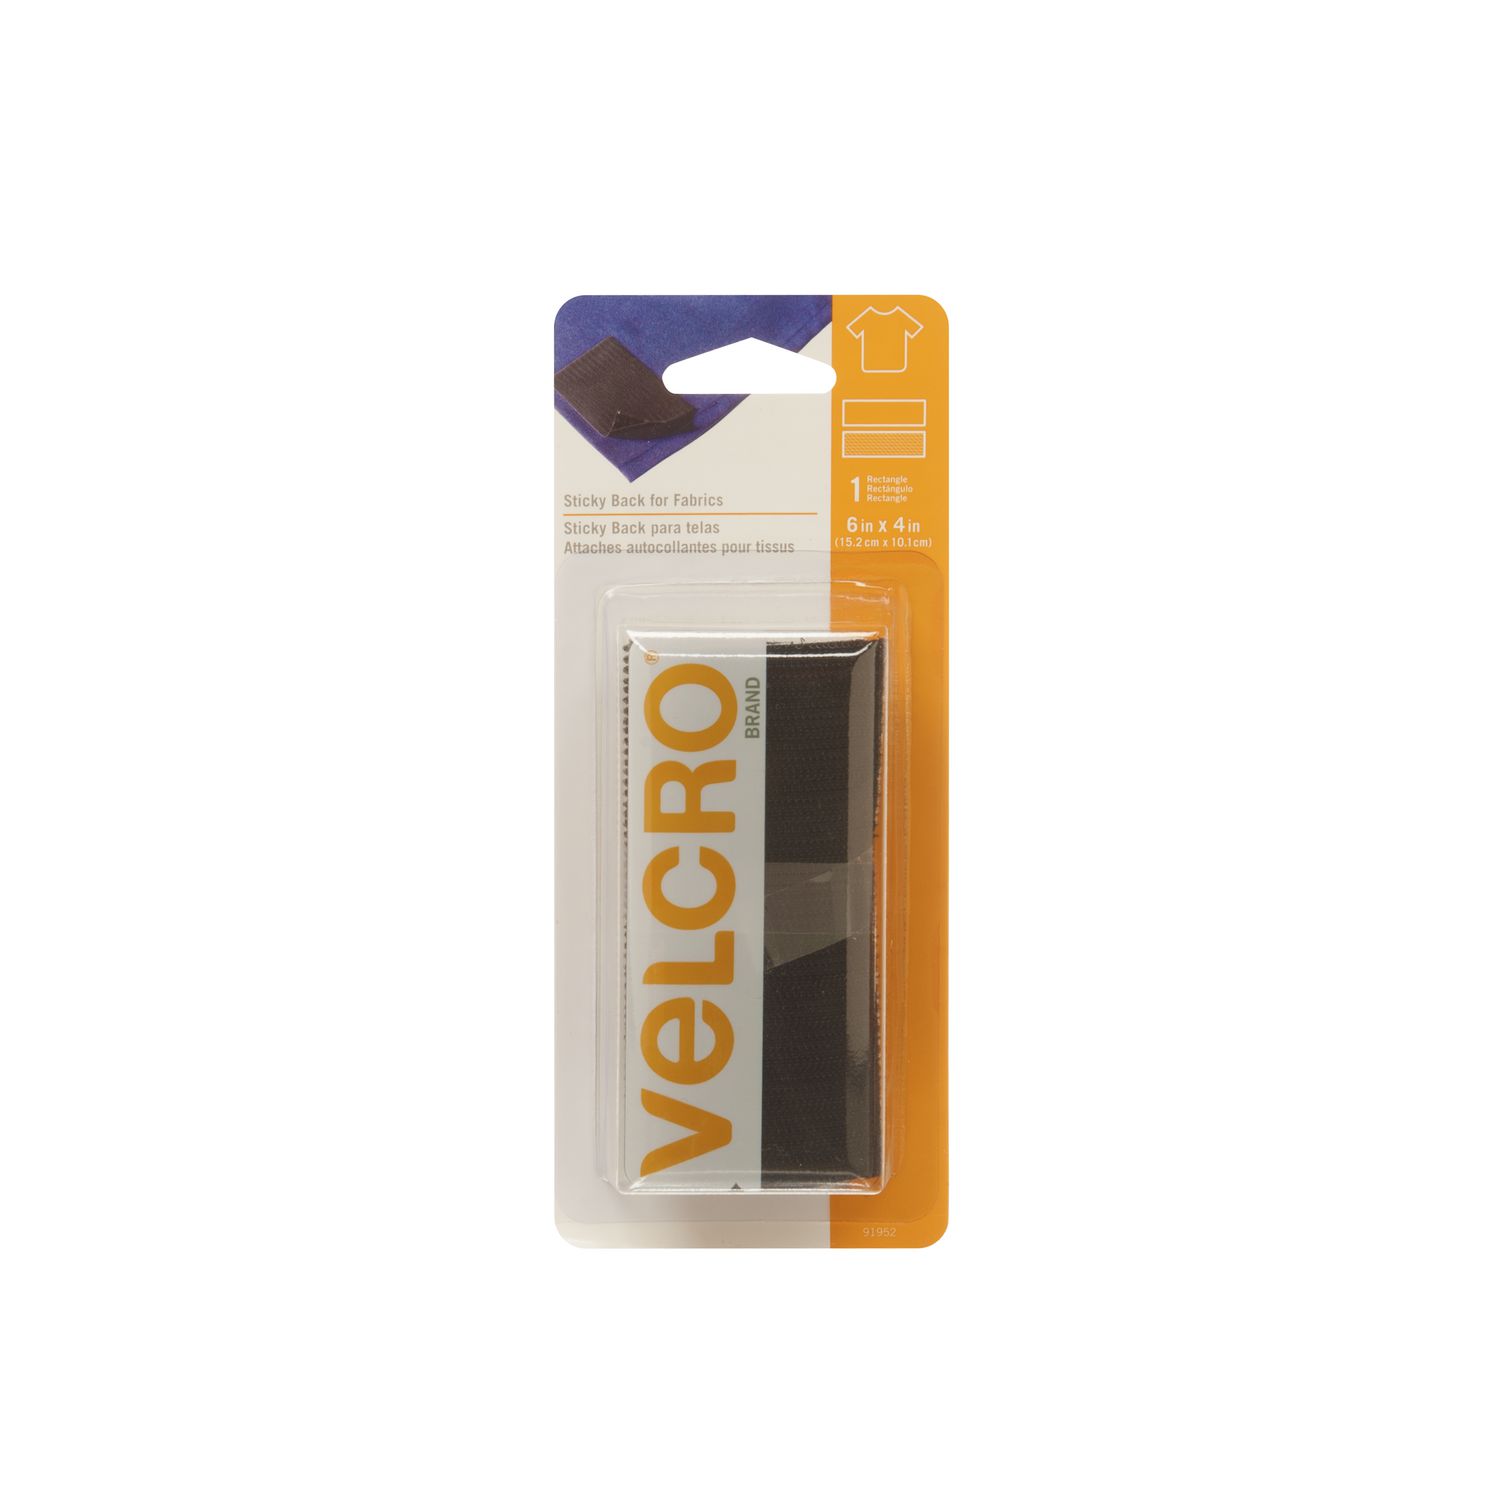 Velcro adhésif pour tissu - by-pixcl